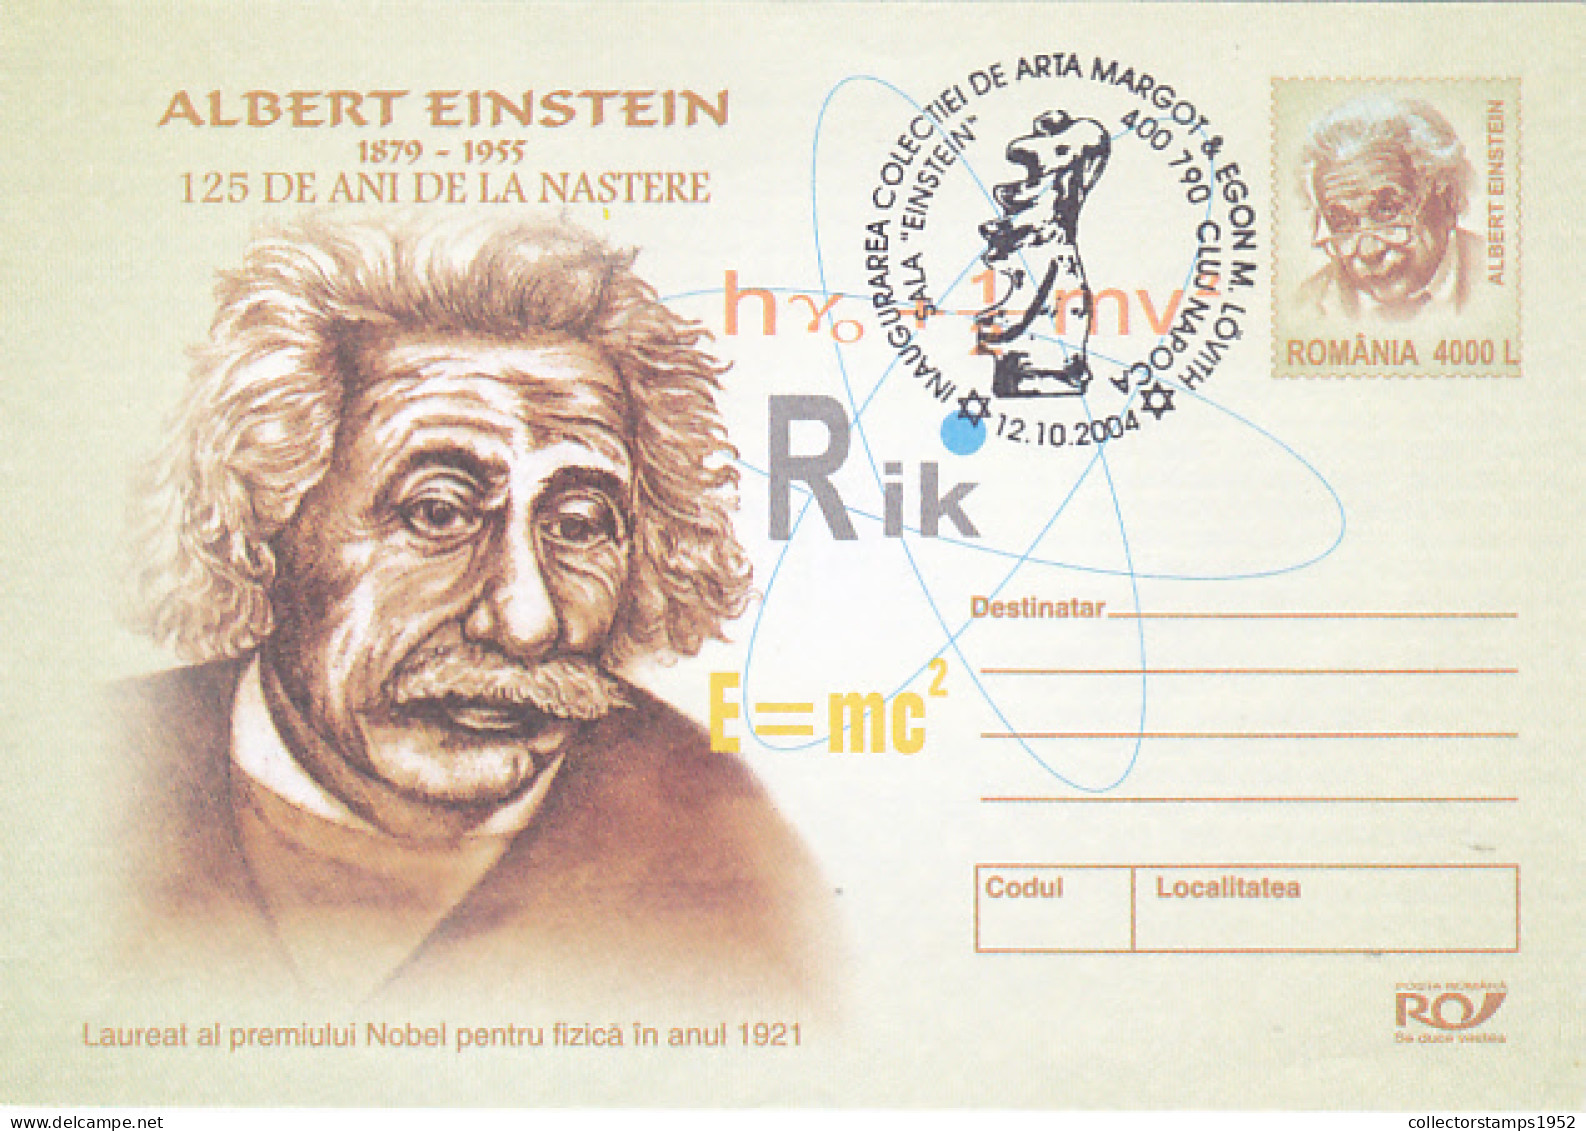 ALBERT EINSTEIN, SCIENTIST, FAMOUS PEOPLE, COVER STATIONERY, 2004, ROMANIA - Albert Einstein